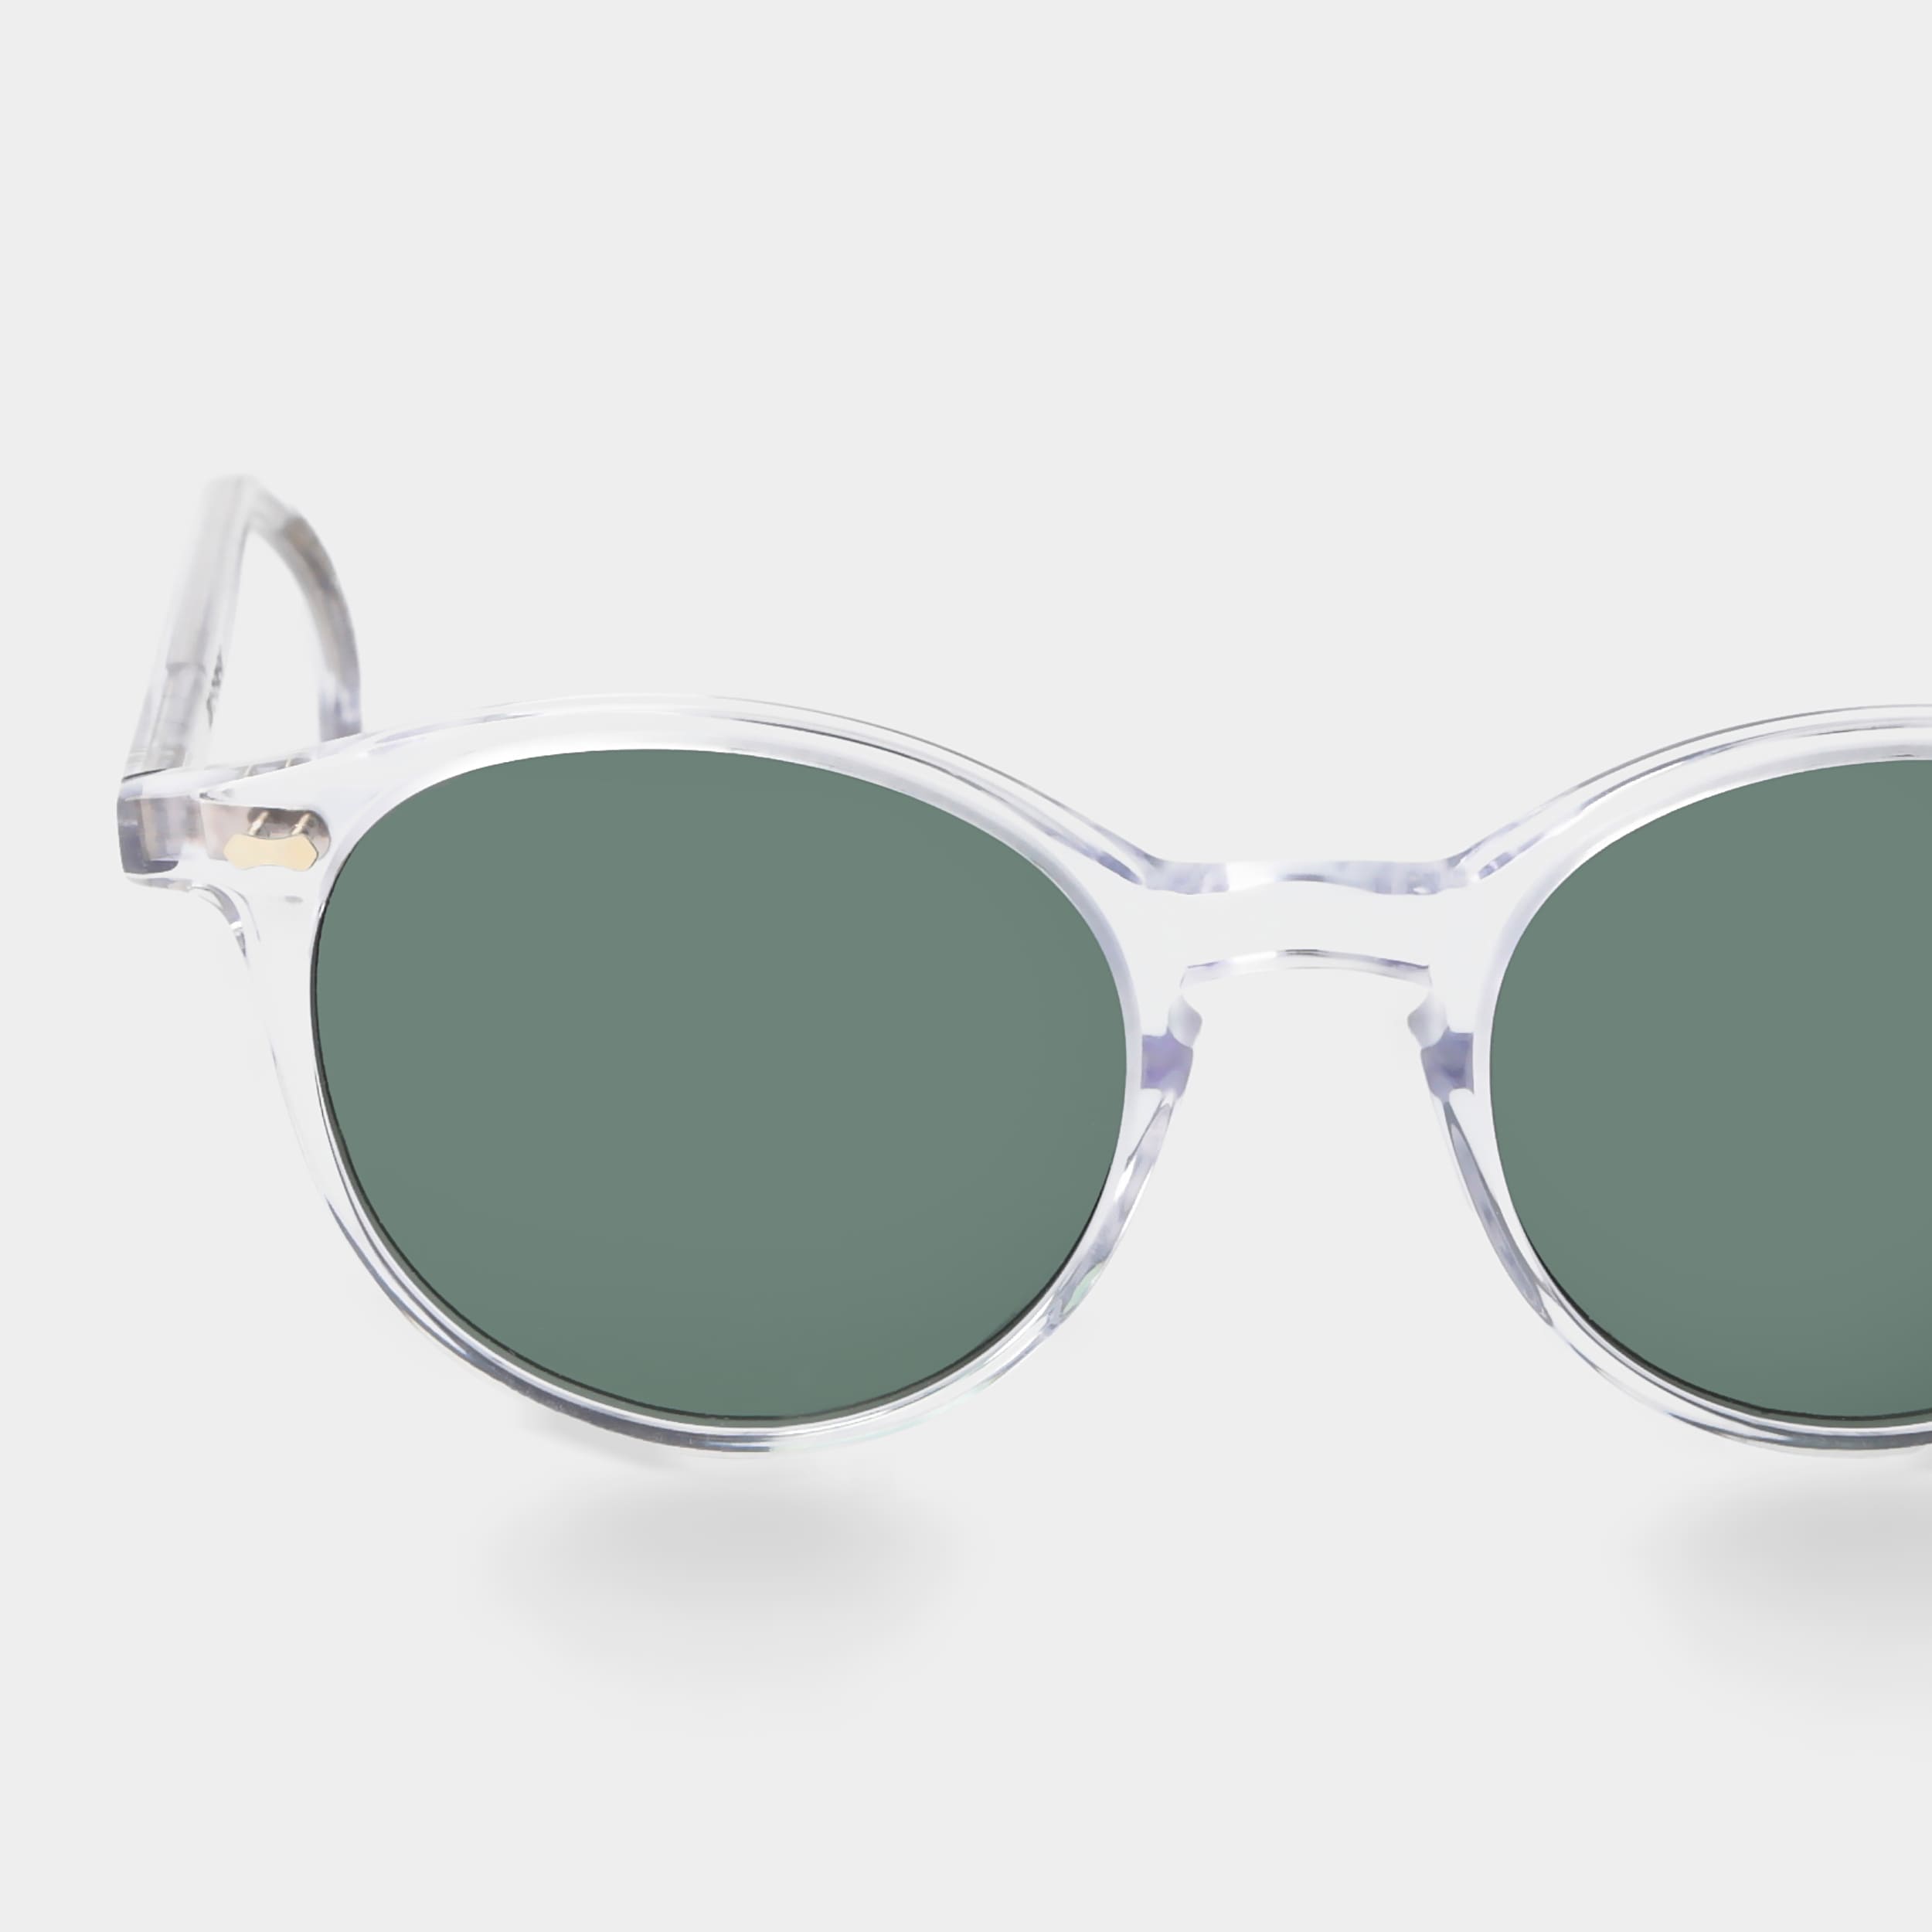 Gläsern | polarisierten und Eyewear TBD Sonnenbrille mit klarem Rahmen